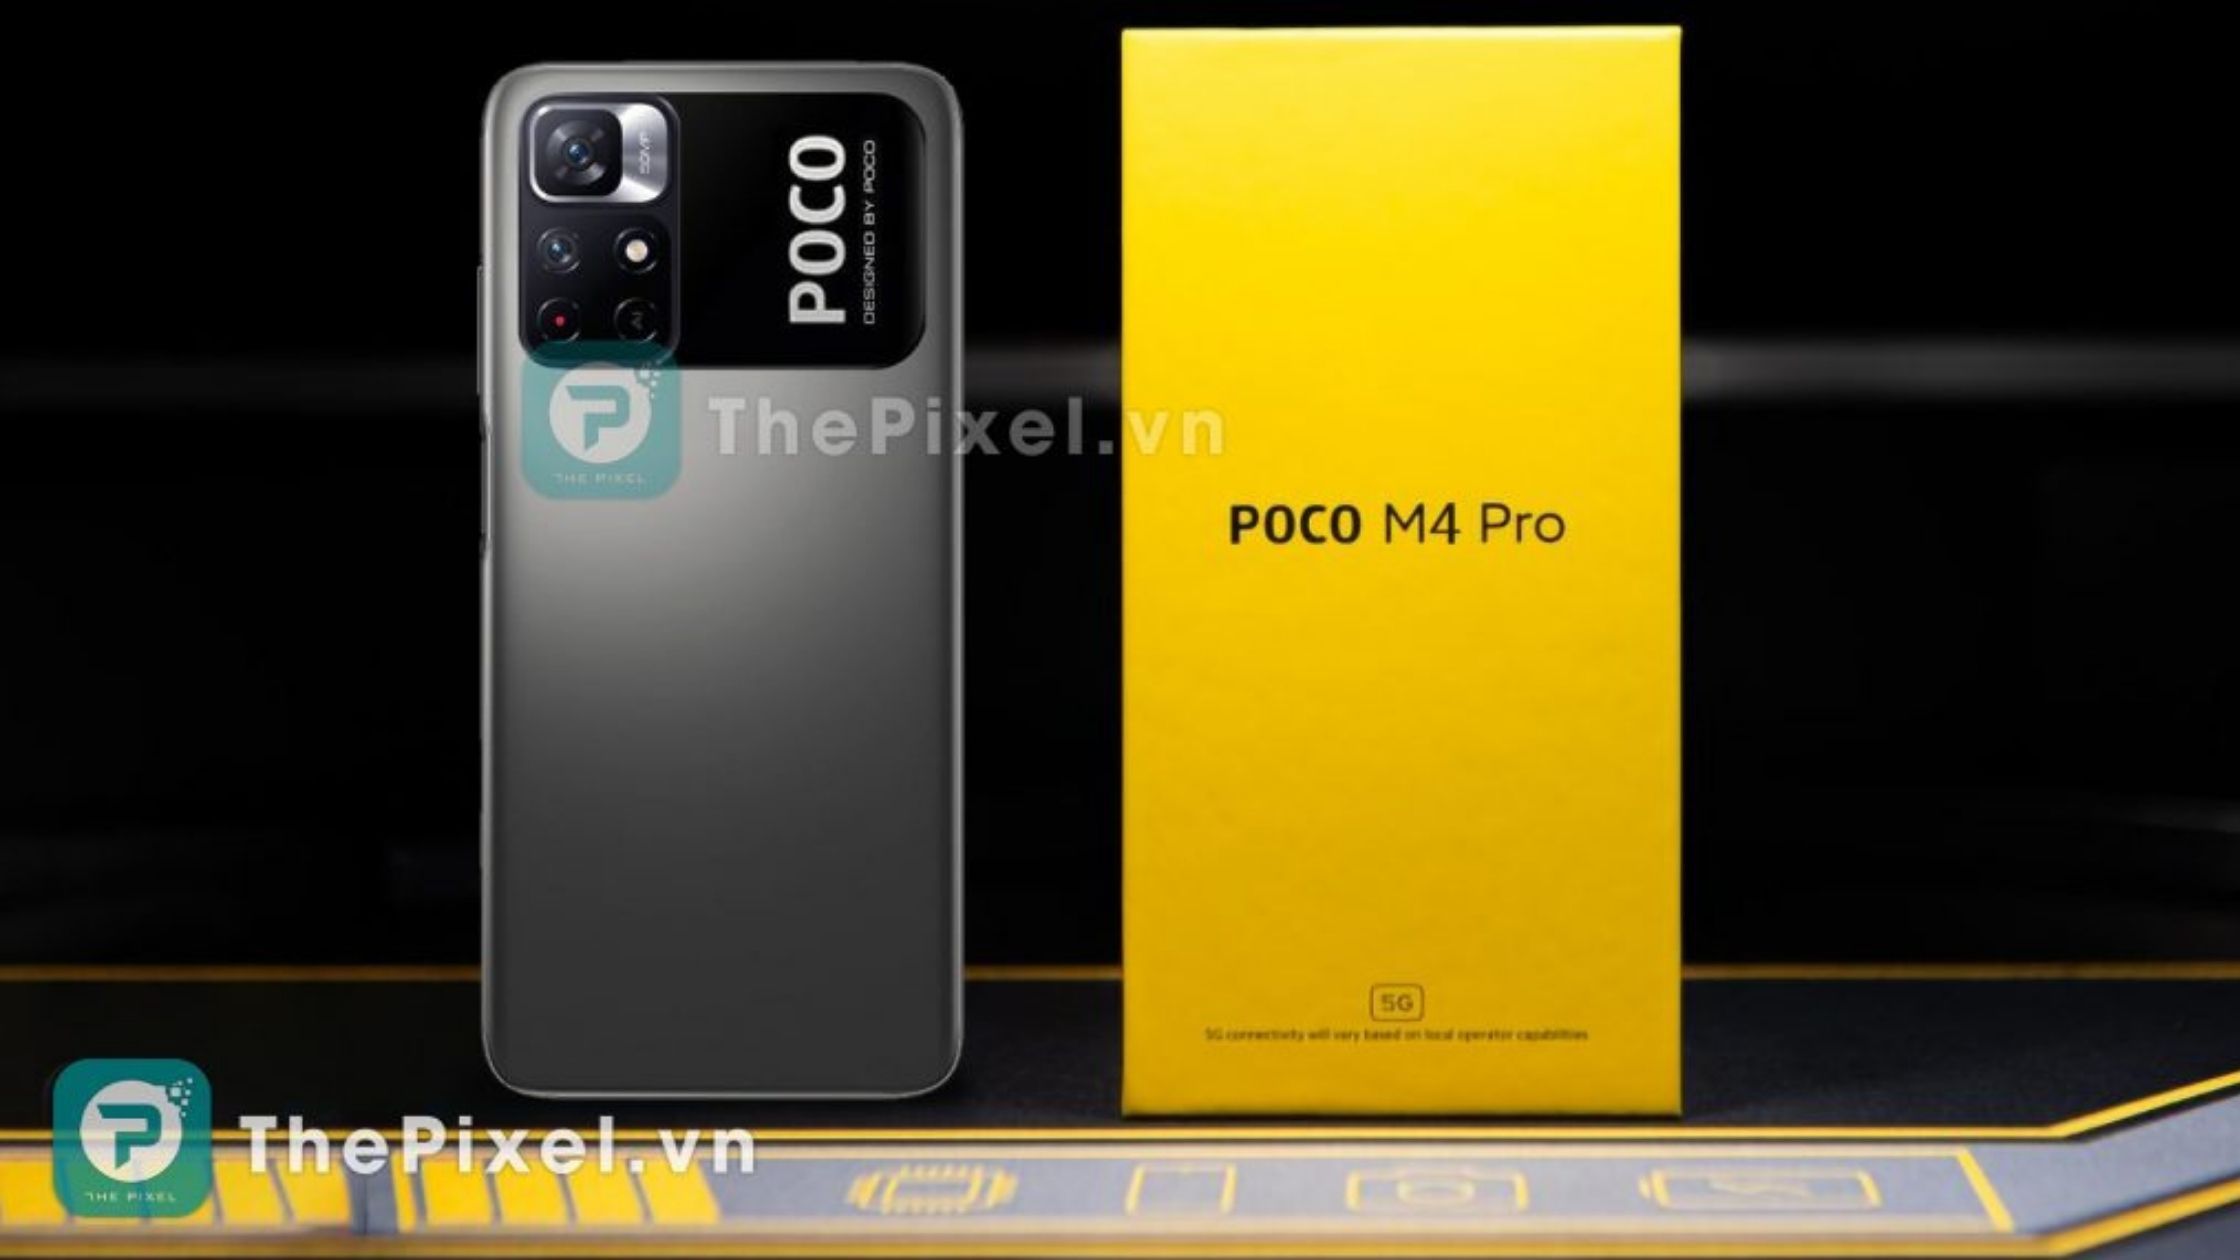 Poco-m4-pro-5g-leaked-imge-with-box